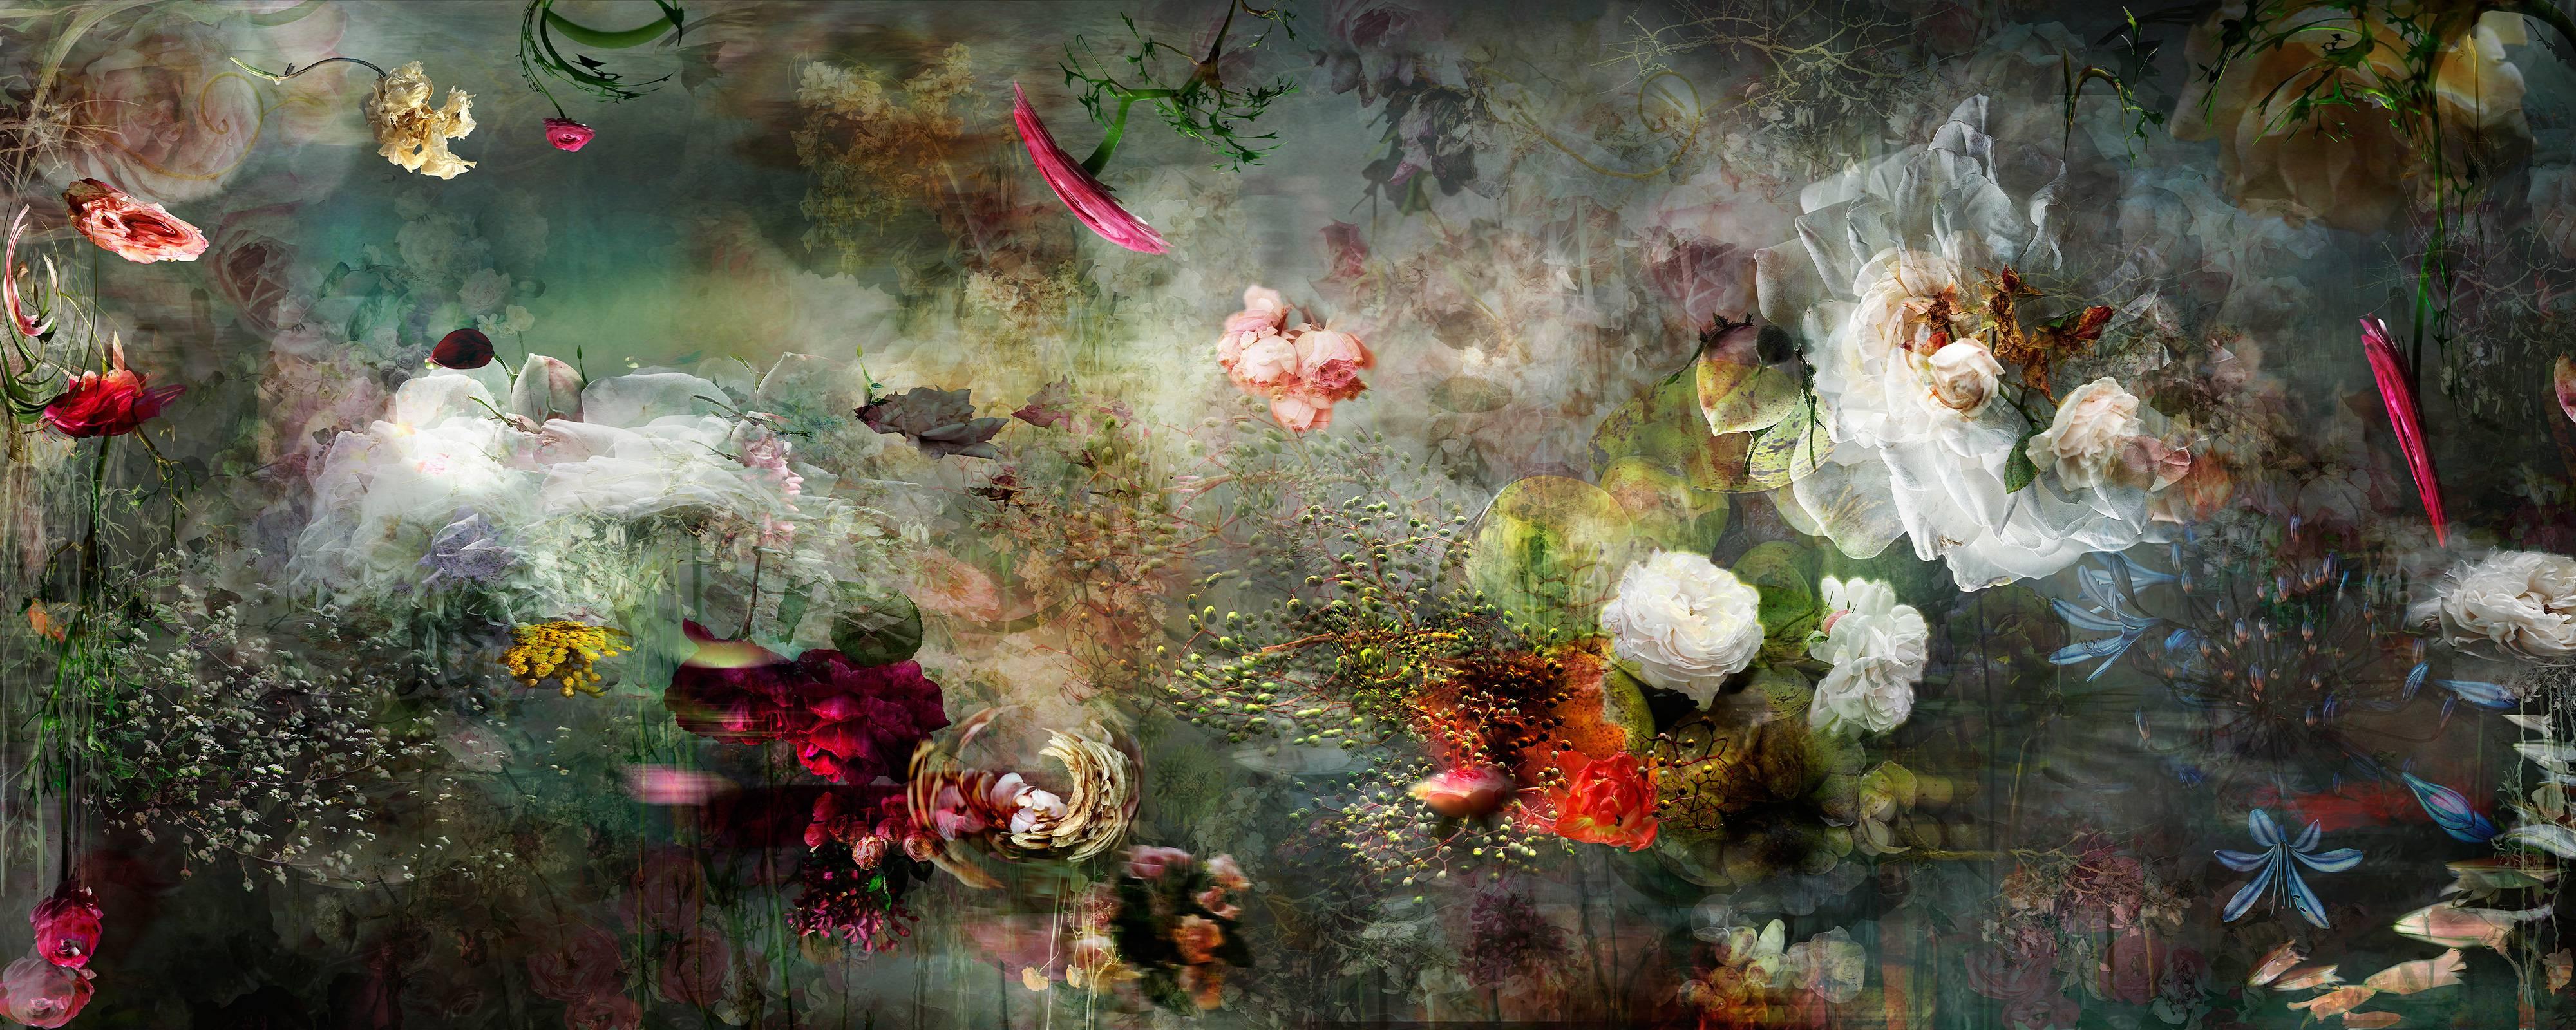 Song for dead heroes #2 dunkle farbige abstrakte florale Landschaftsfotokomposition